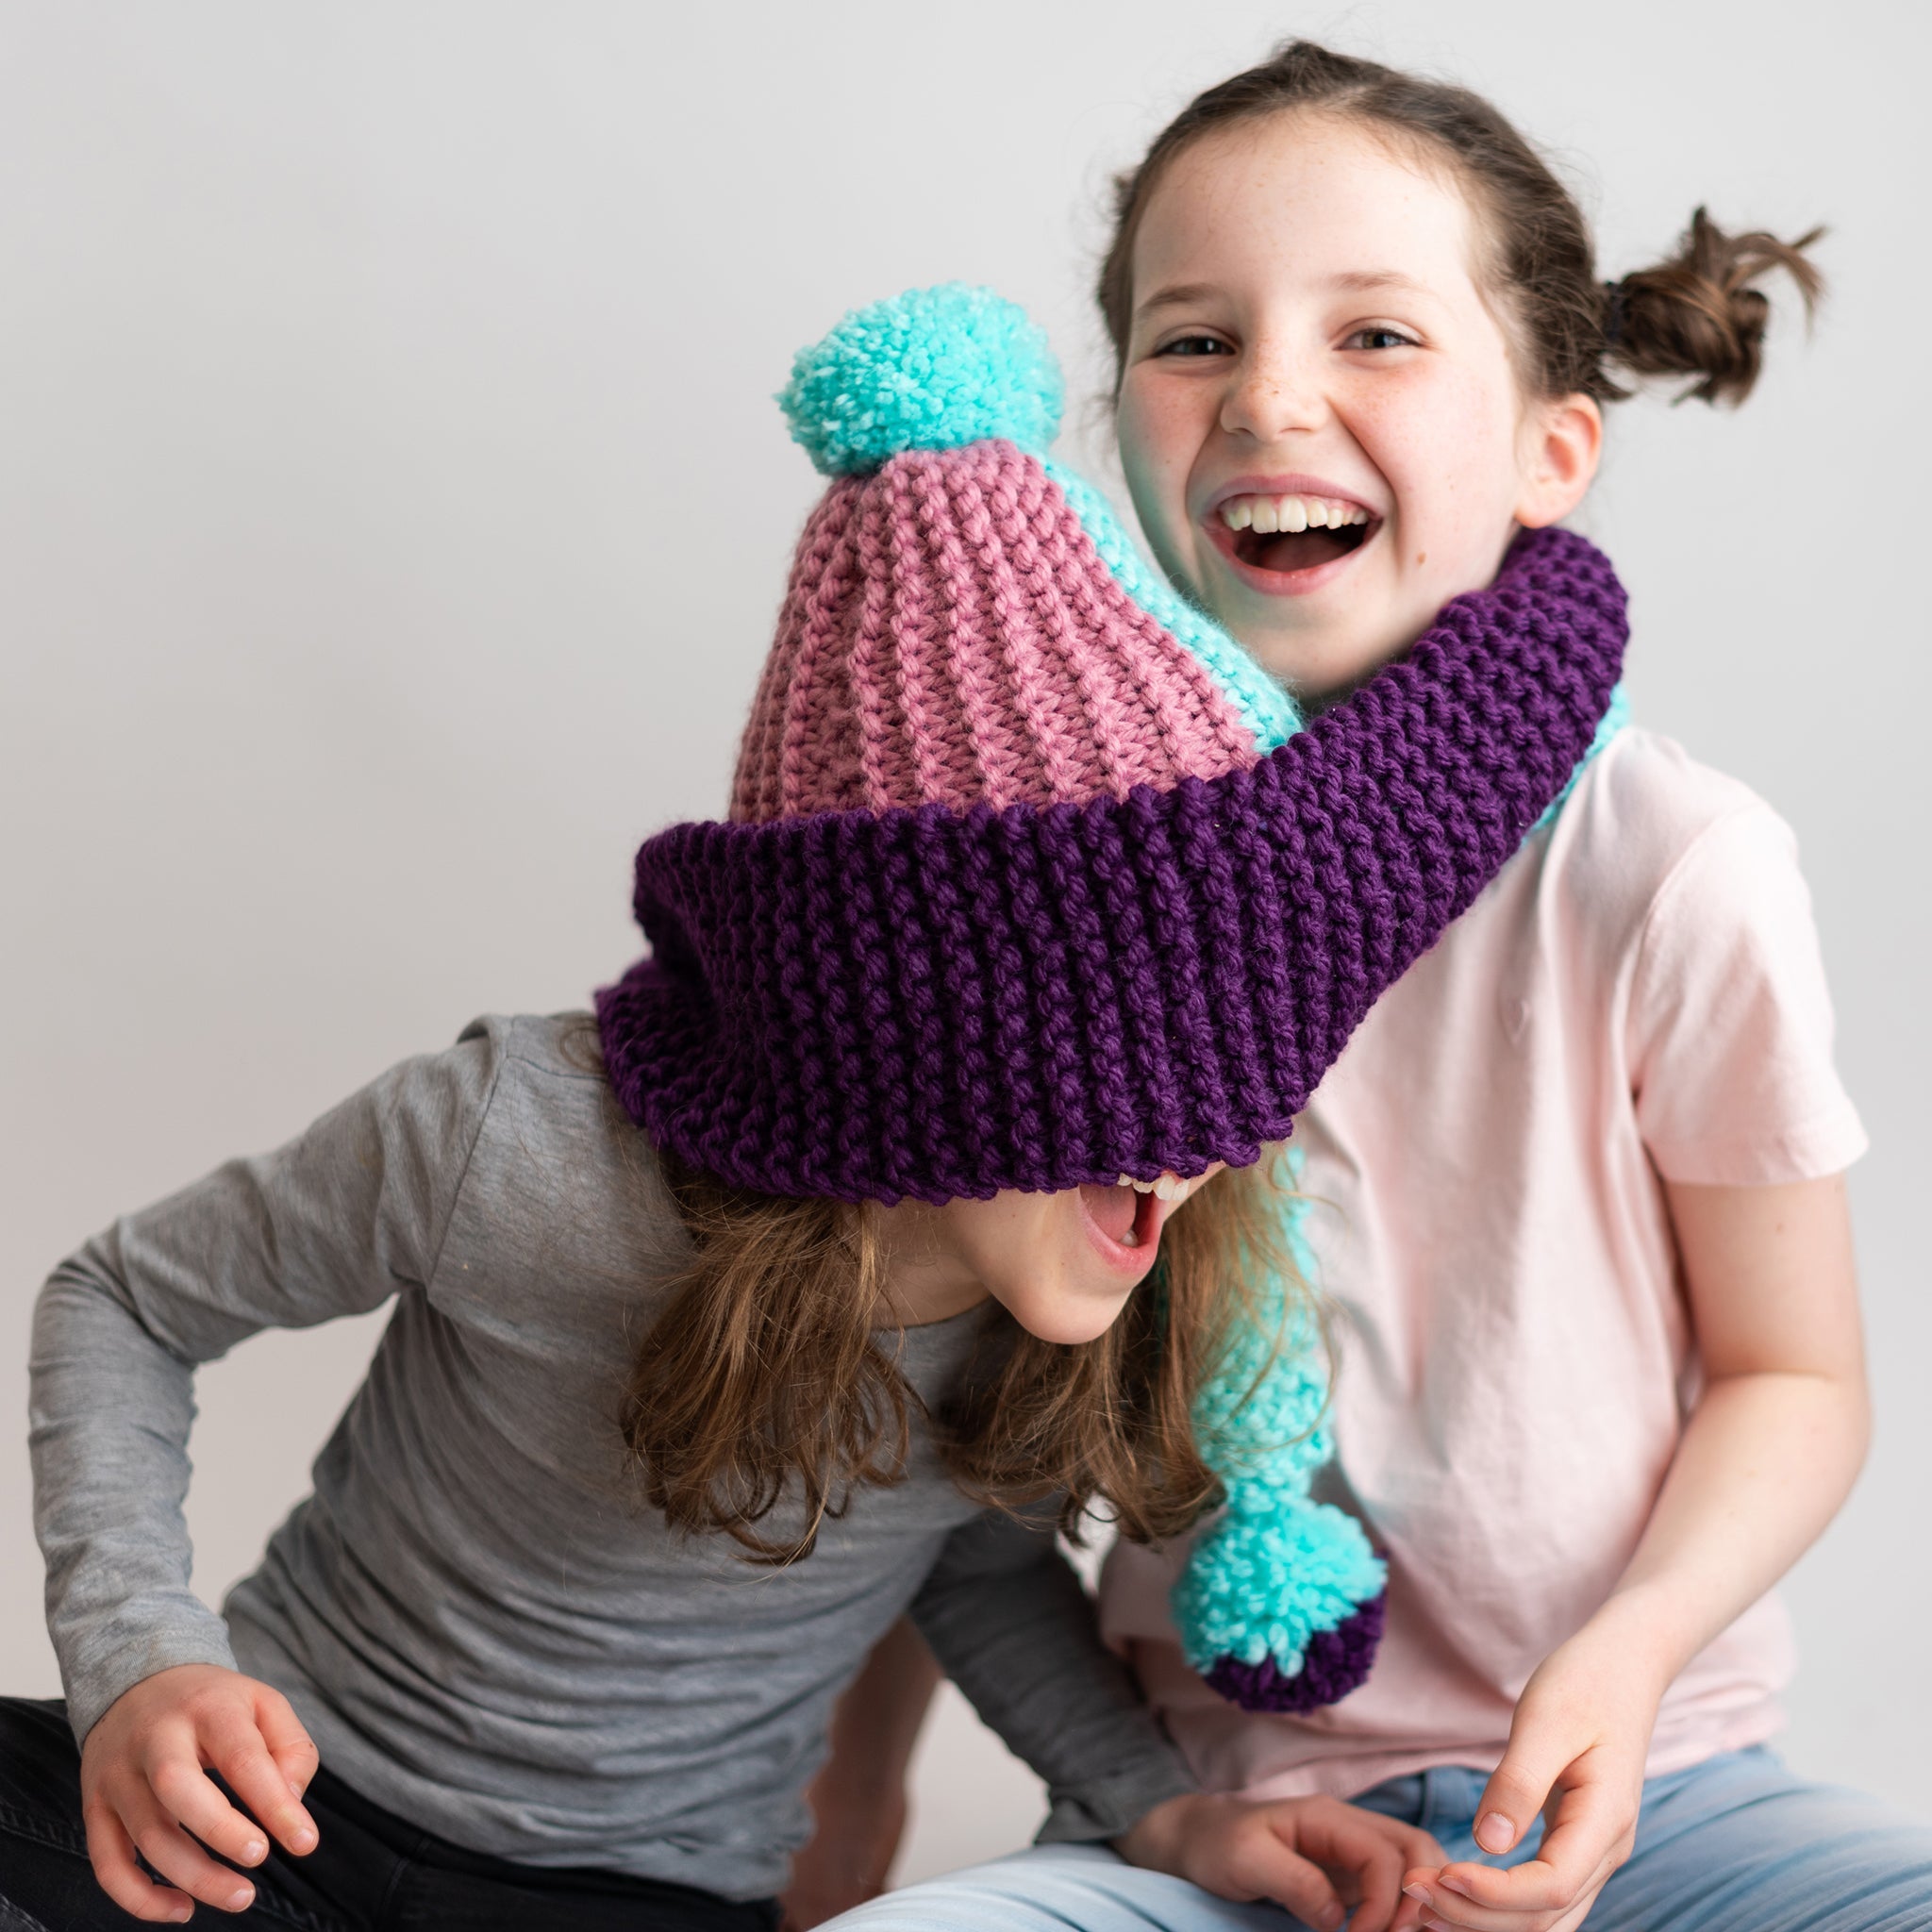 Knitters of Tomorrow - Children's Knitting Kit